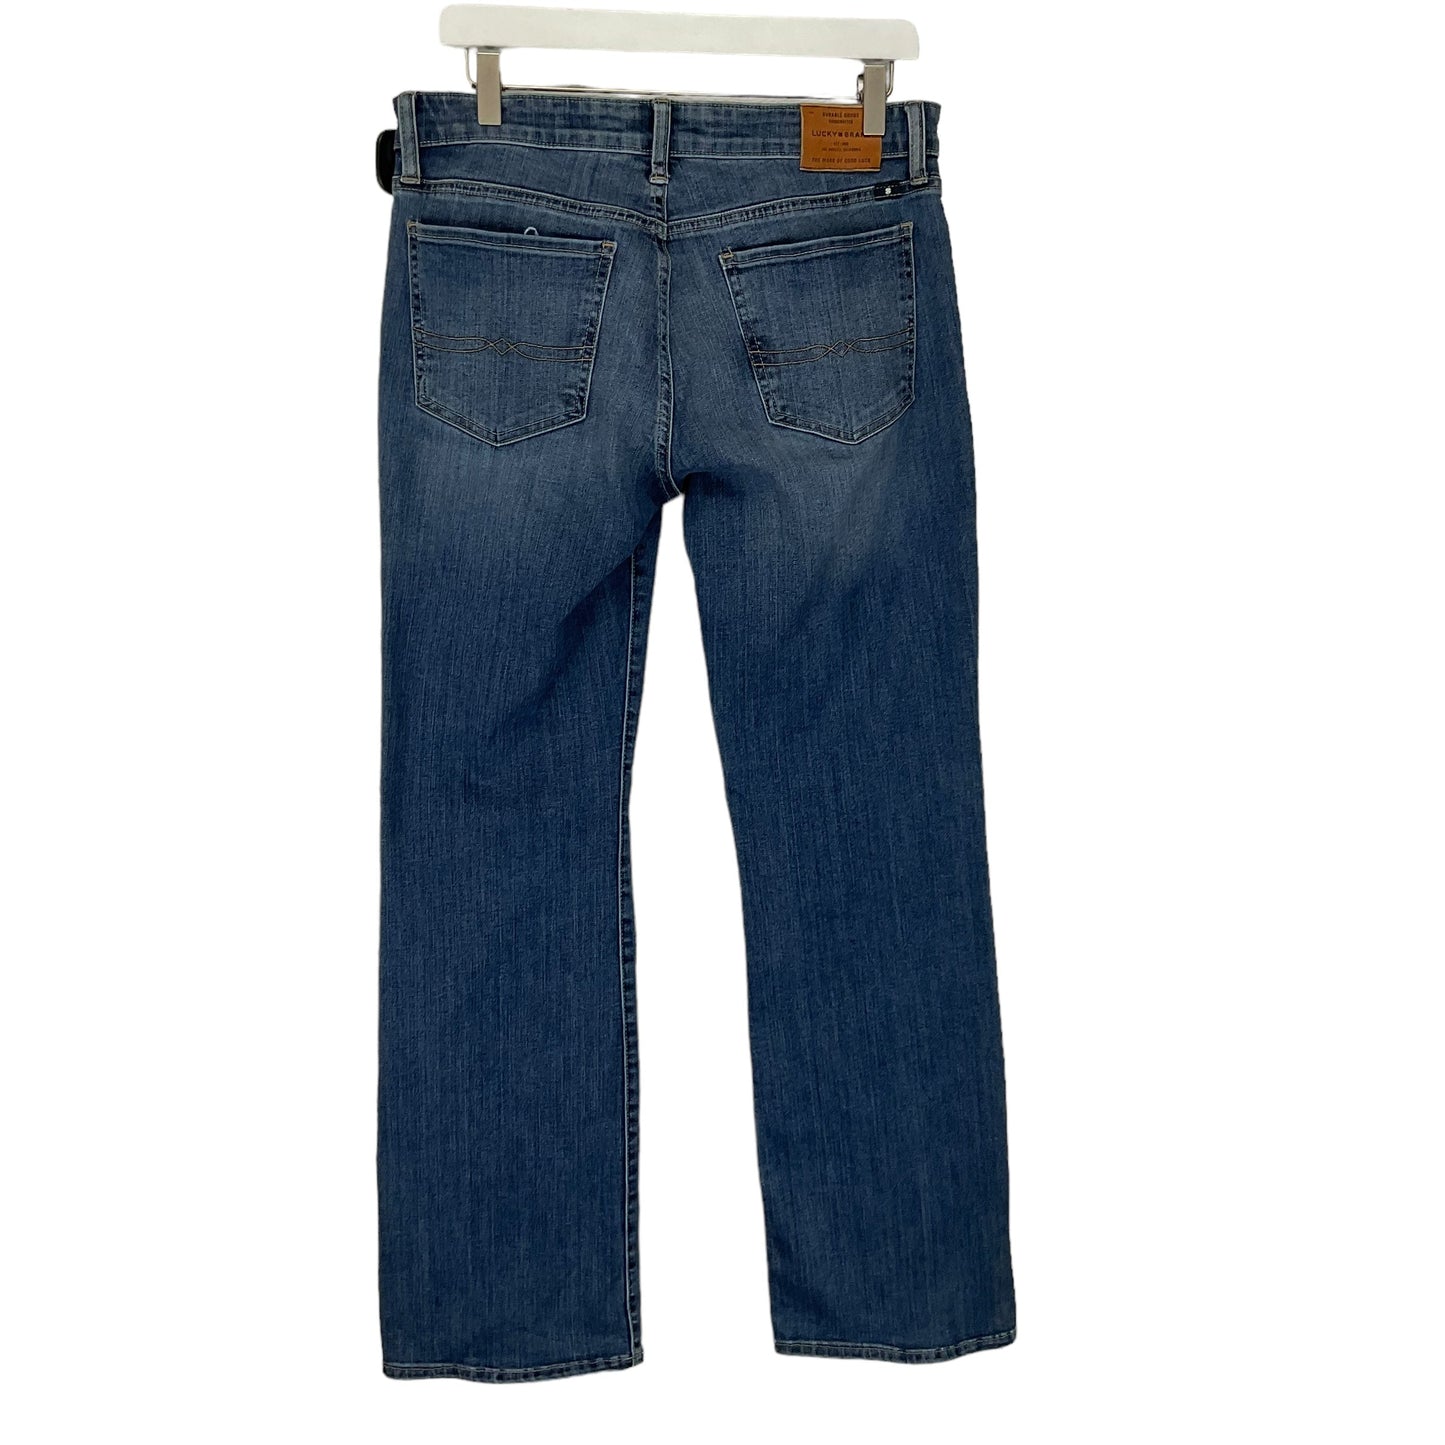 Blue Denim Jeans Boot Cut Lucky Brand, Size 10